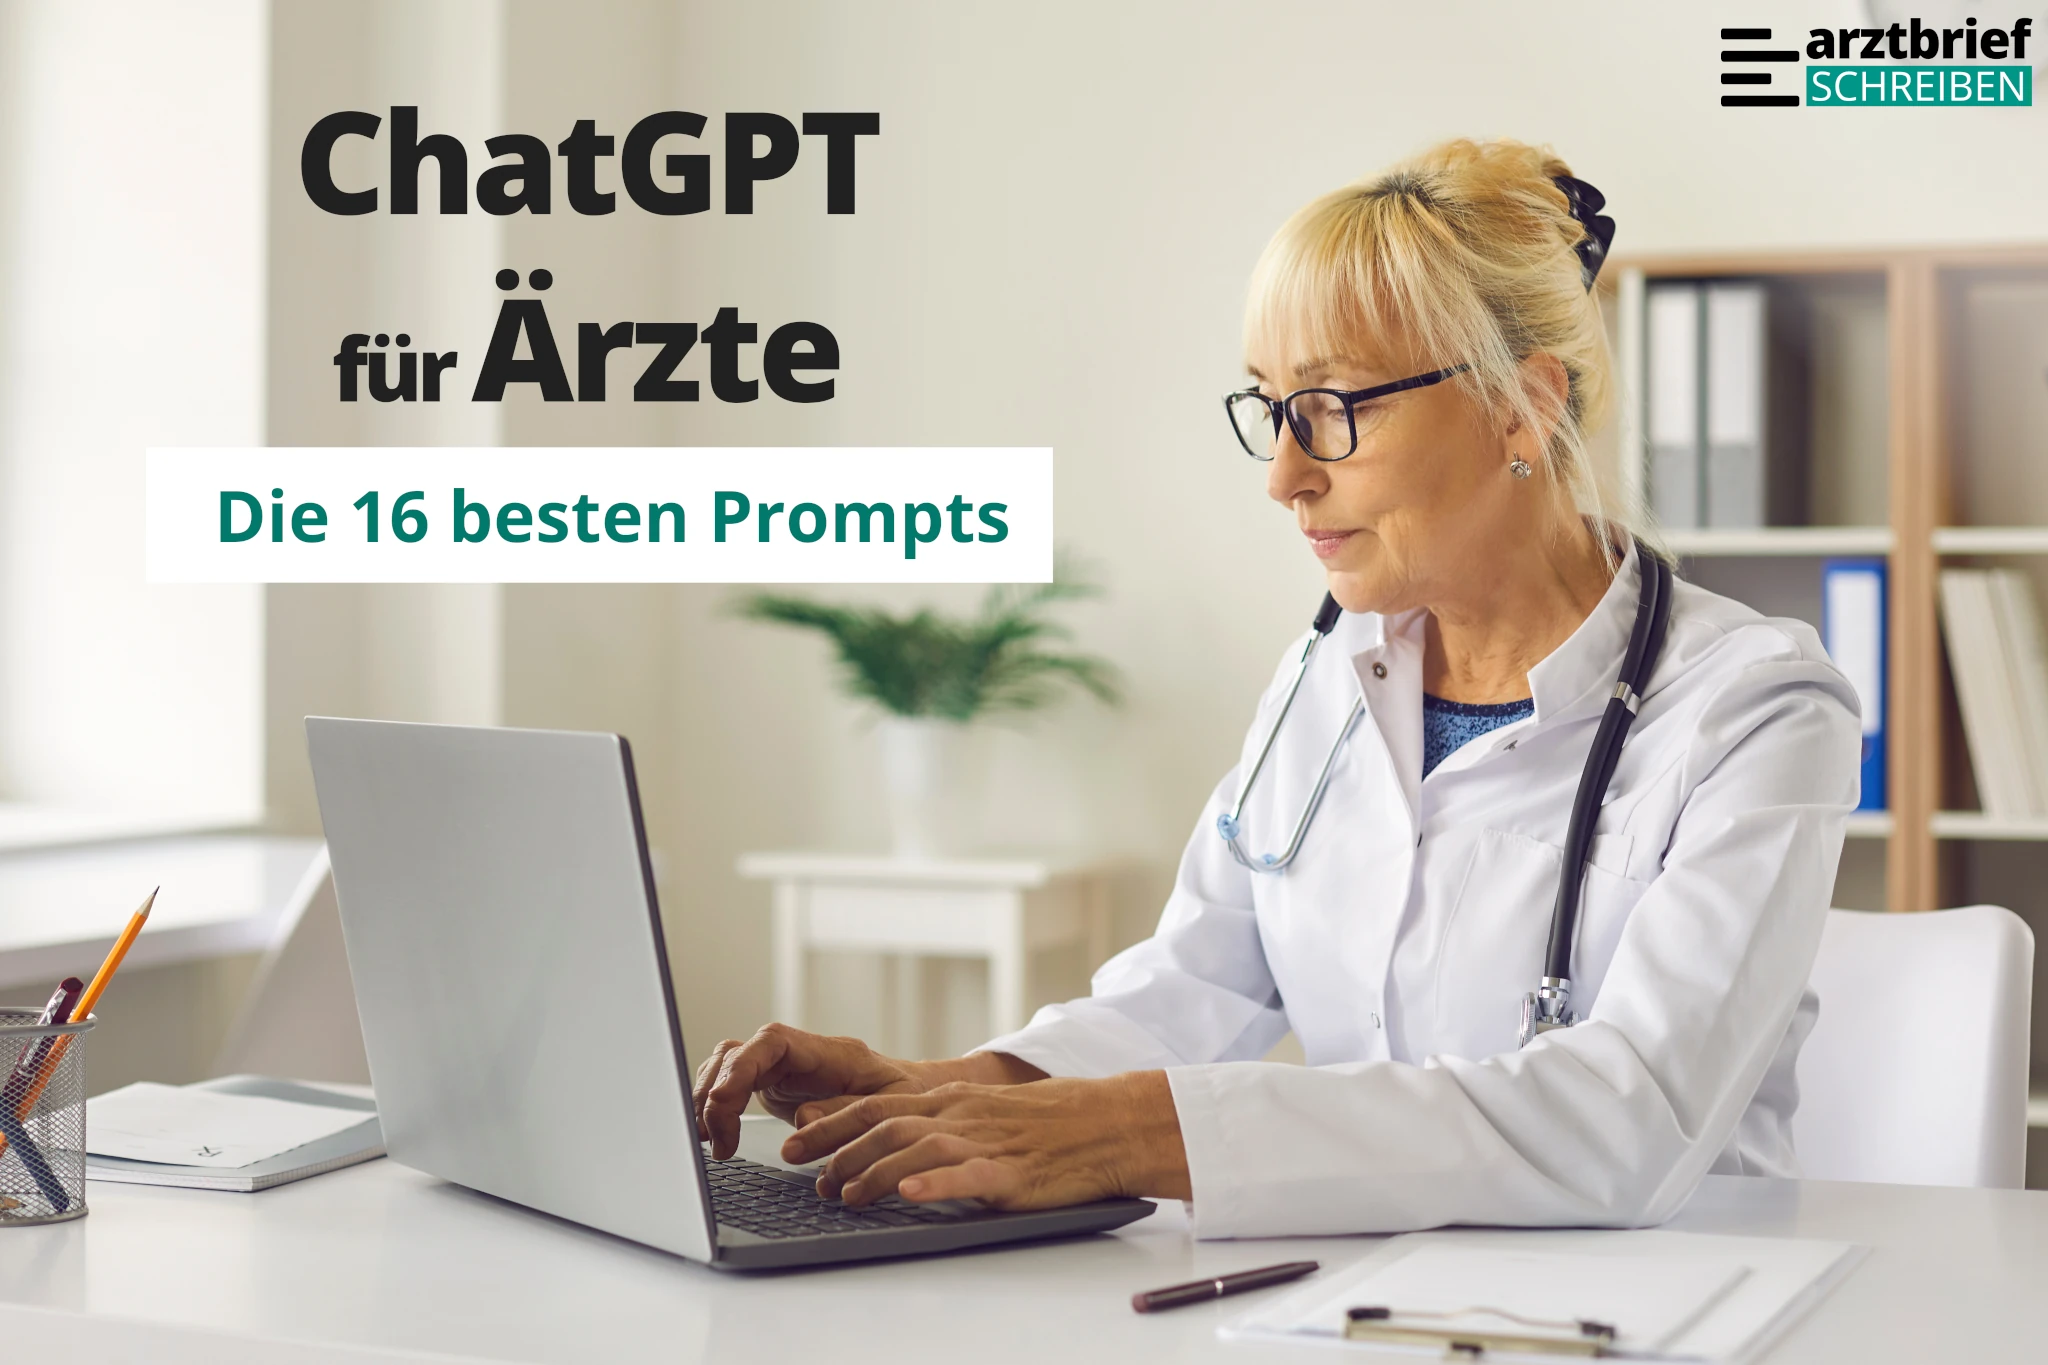 Du betrachtest gerade ChatGPT für Ärzte: Die 16 besten Medizin-Prompts auf Deutsch